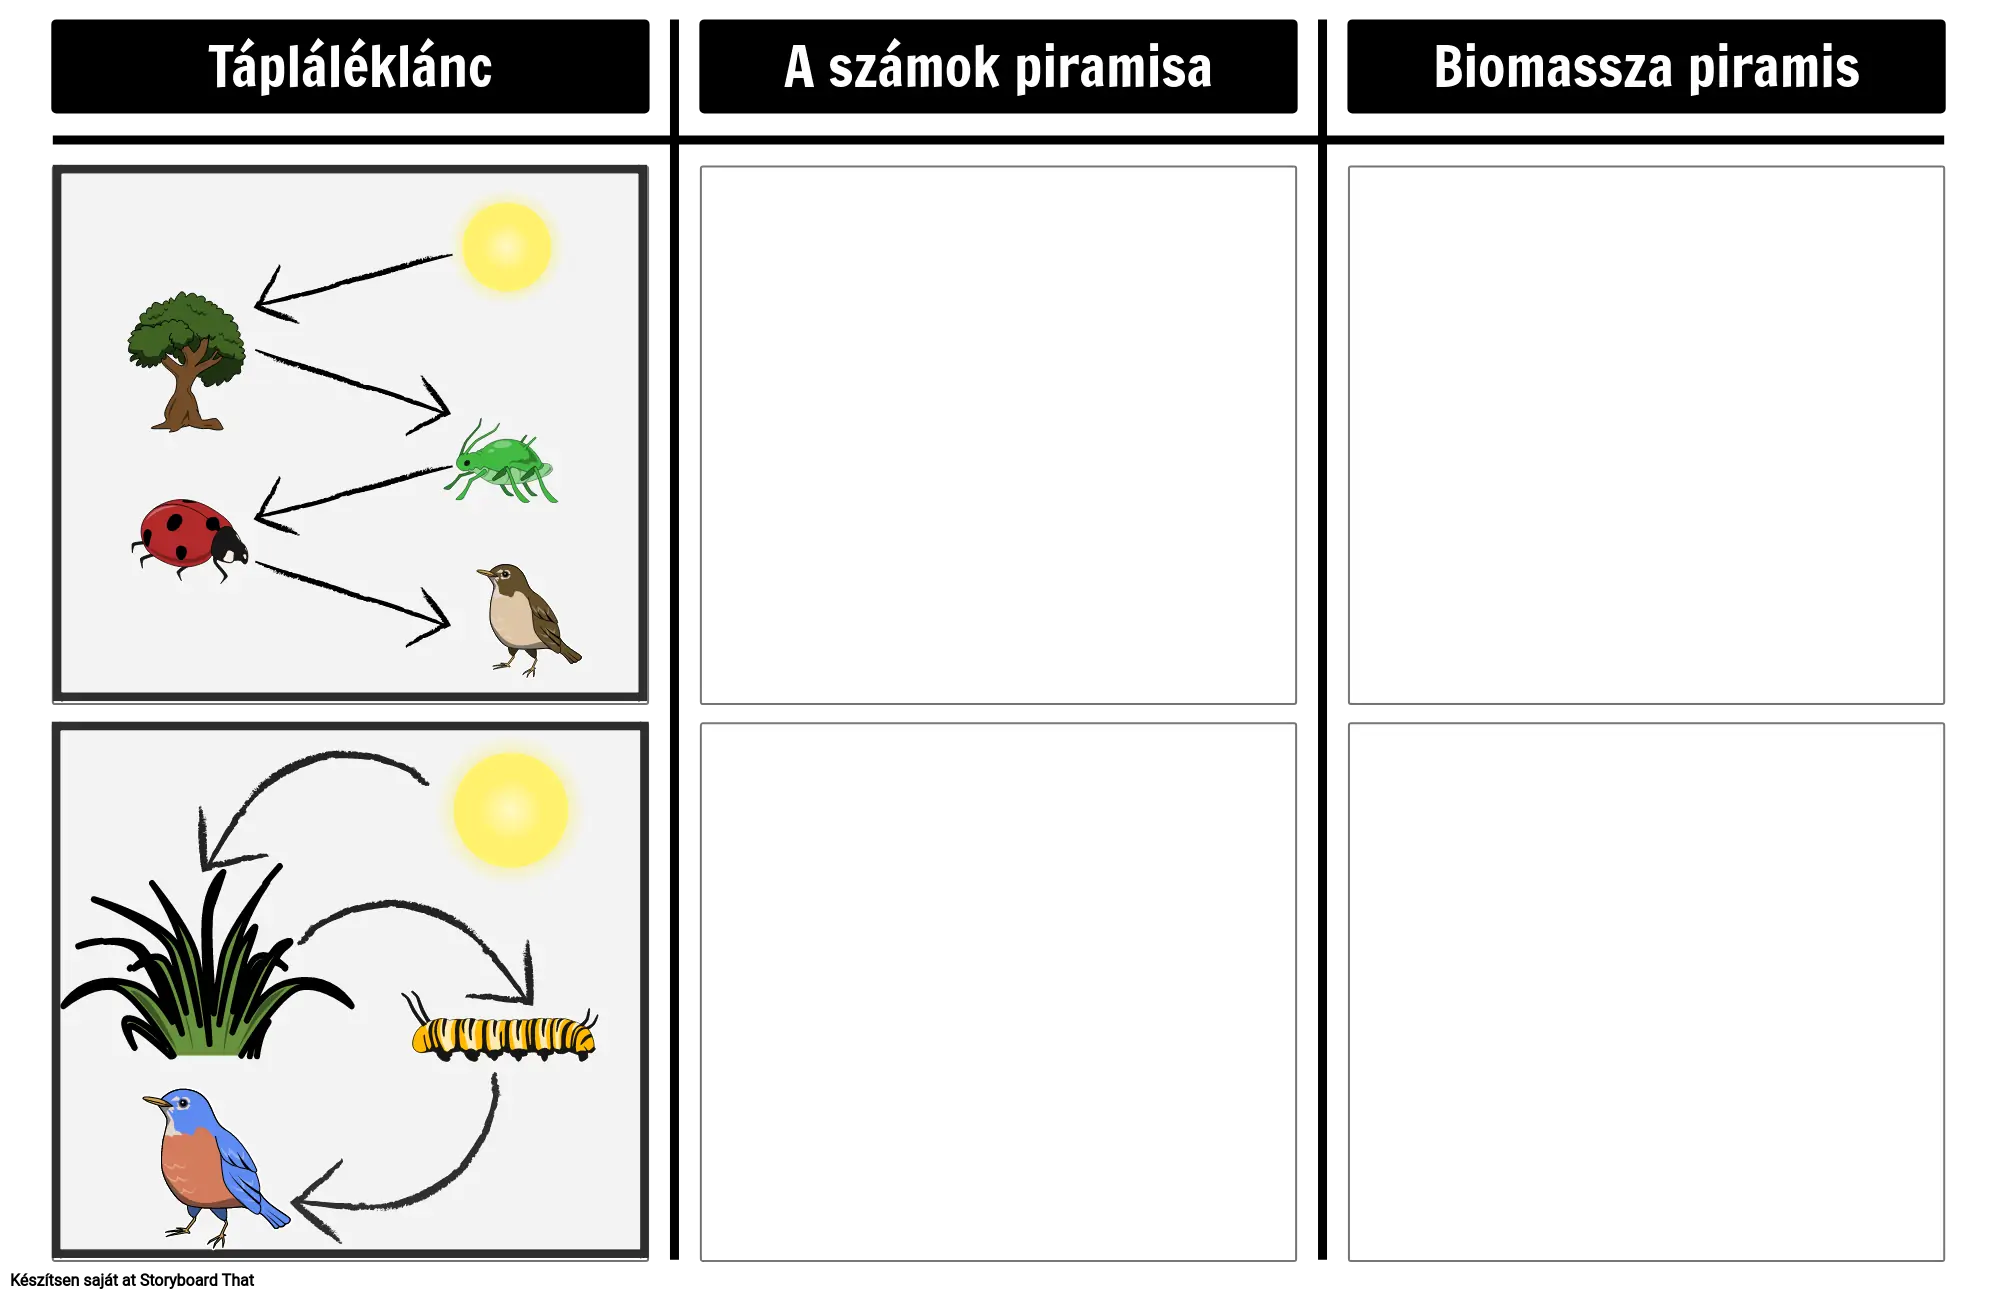 A Számok és a Biomassza Piramisa